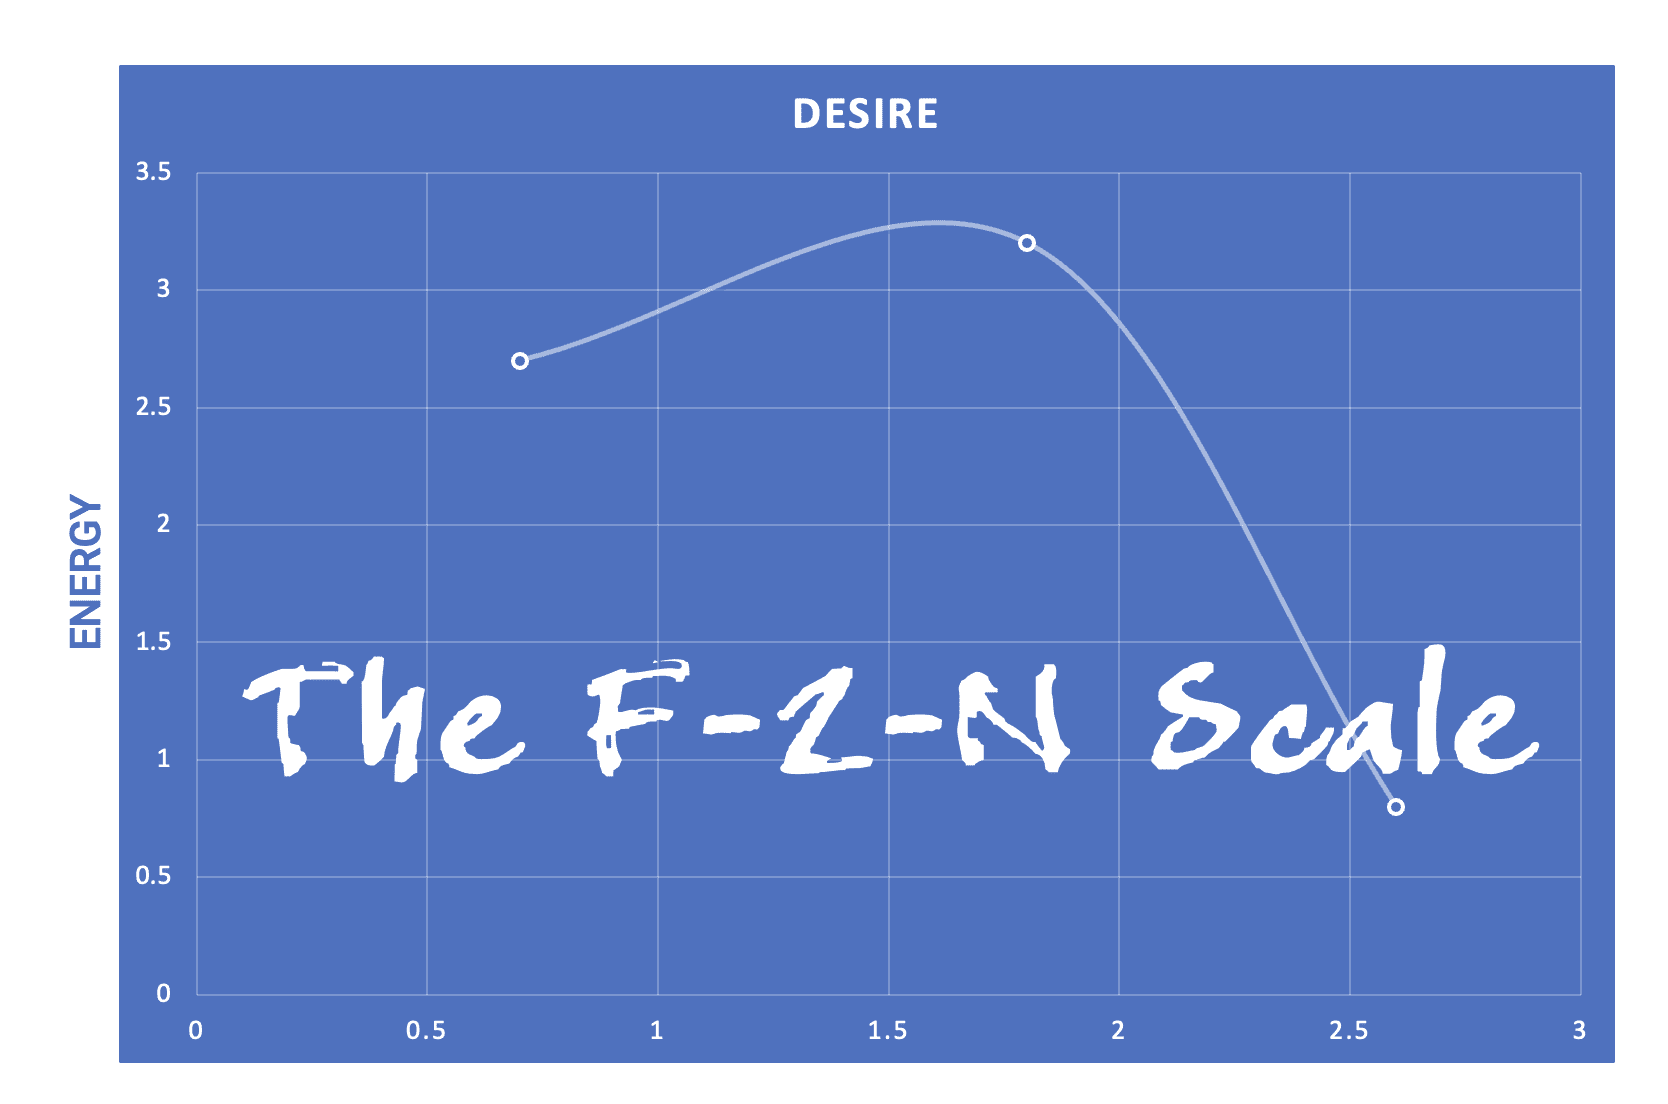 the f-2-n scale